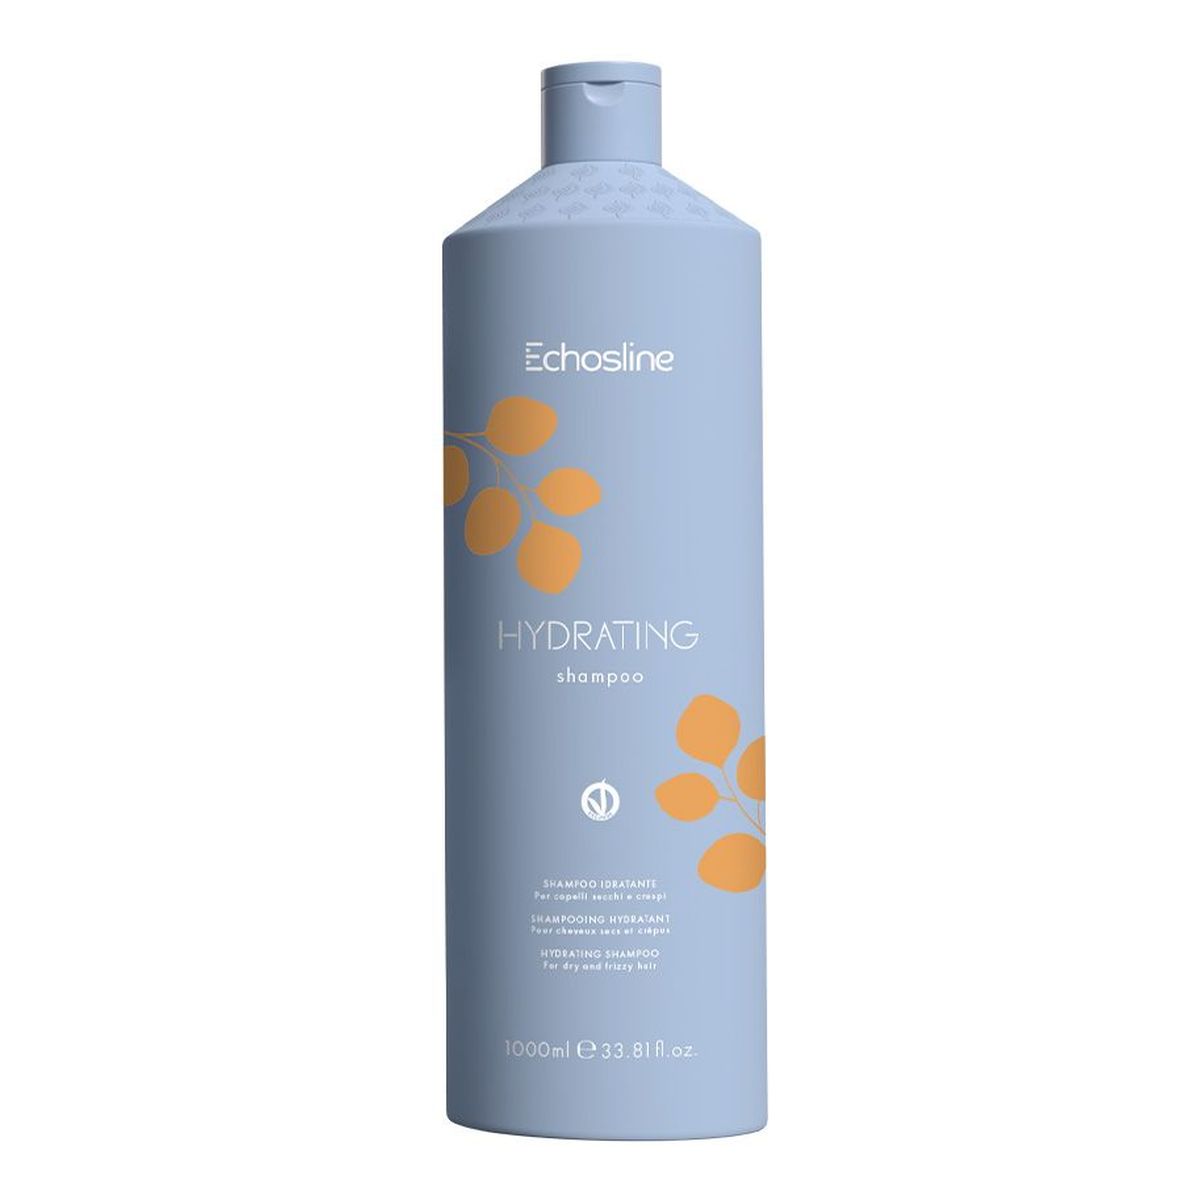 Echosline Hydrating nawilżający szampon do włosów 1000ml